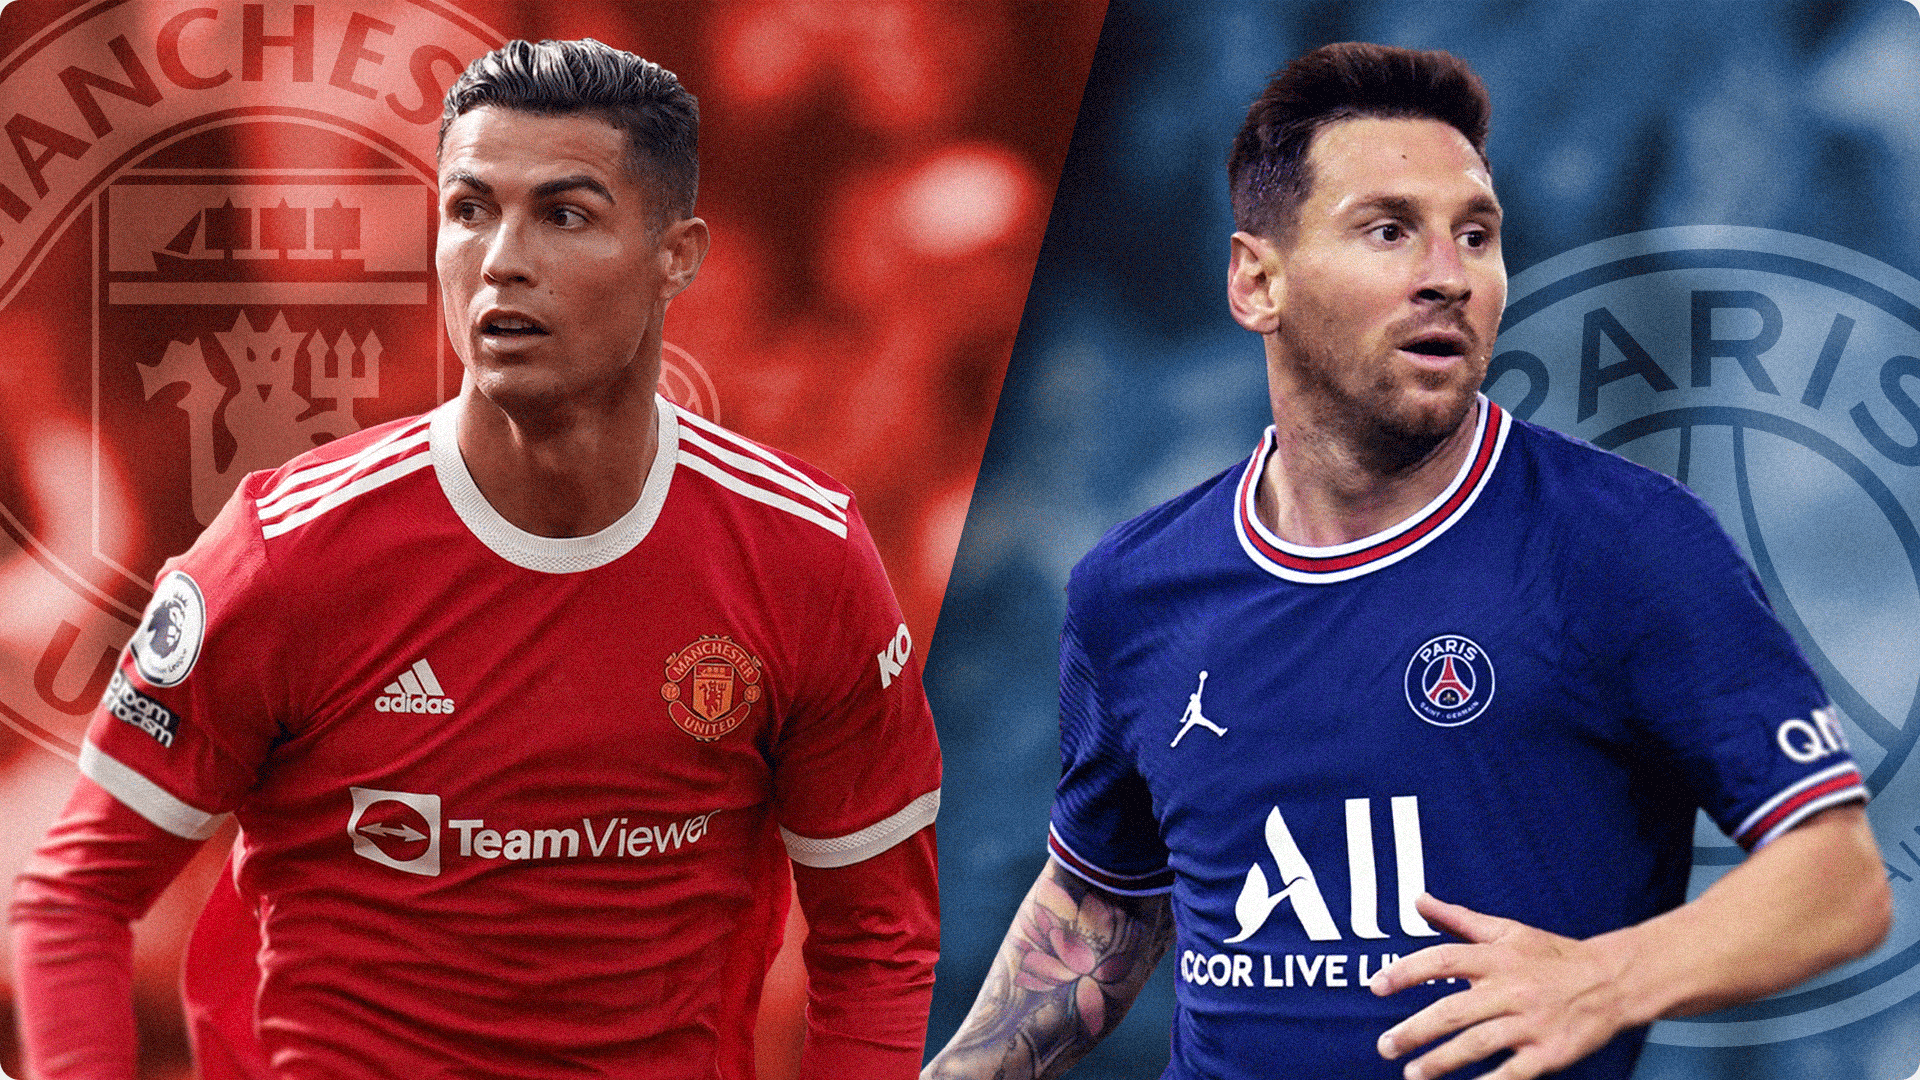 Tranh luận về ai là cầu thủ bóng đá xuất sắc nhất hiện nay vẫn đang cháy giữa Messi và Ronaldo. Bạn thuộc phe nào? Hãy xem hình ảnh này để thấy những pha bóng mãn nhãn của họ trong những trận đấu nổi tiếng nhất trên sân cỏ.